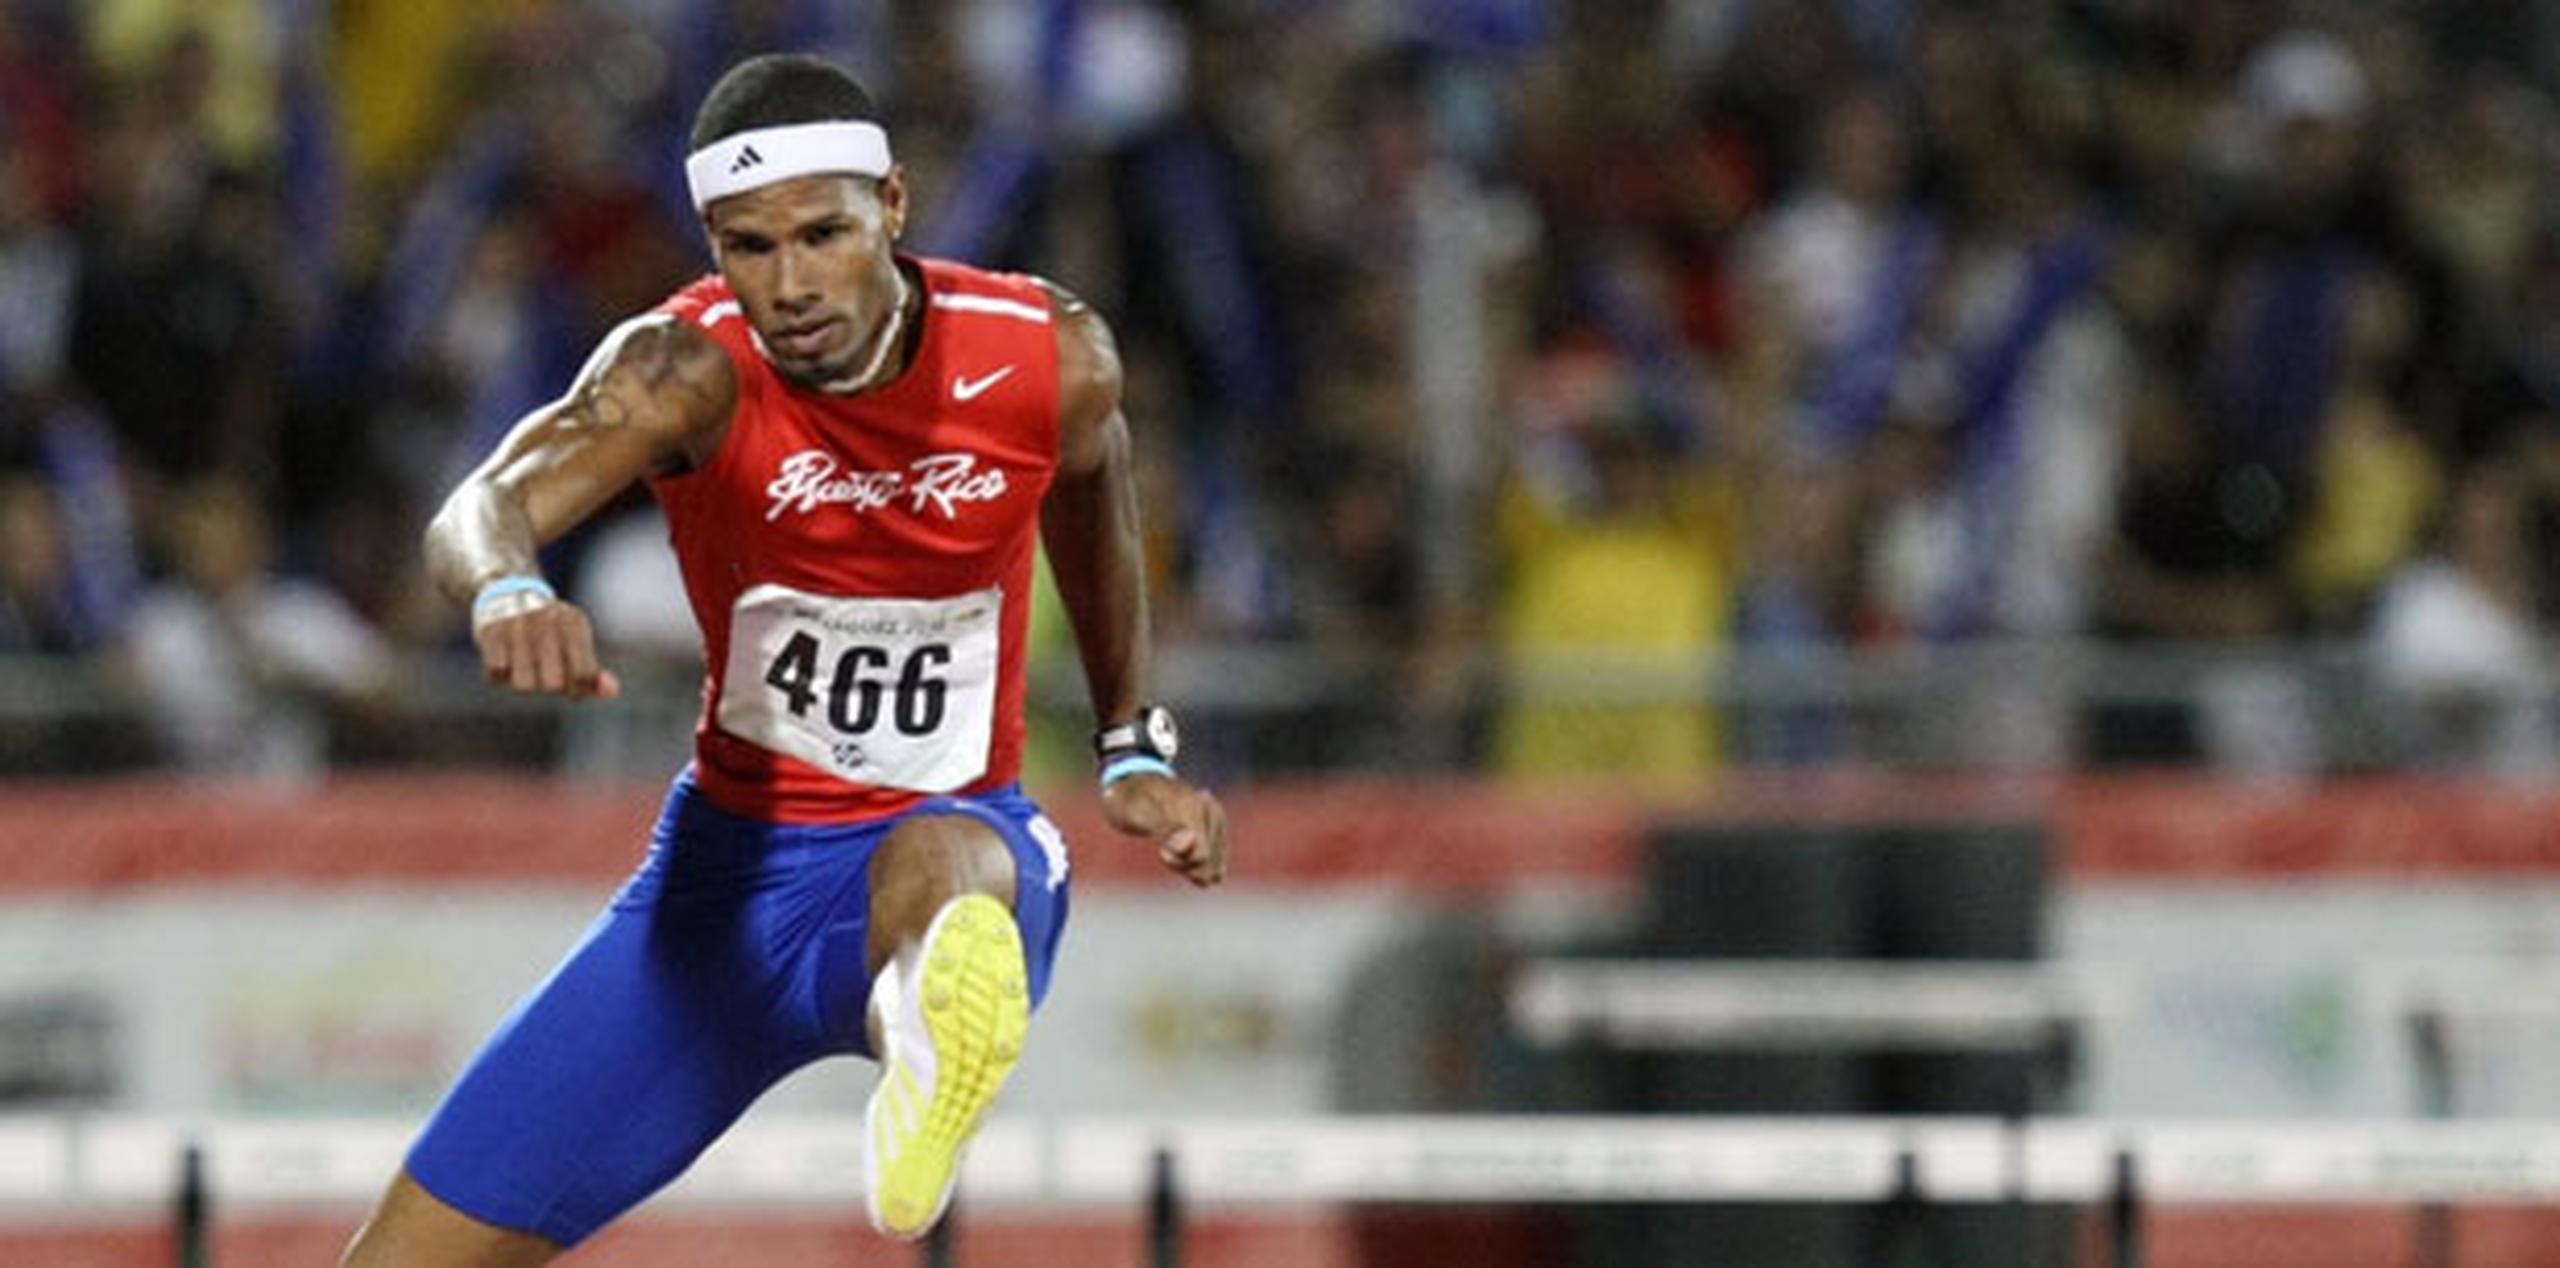 El medallista de bronce en Londres 2012 ha corrido este año para un mejor registro de 49.12 segundos  los 400 metros con vallas en lo que ha sido un lento comienzo de temporada. (Archivo)